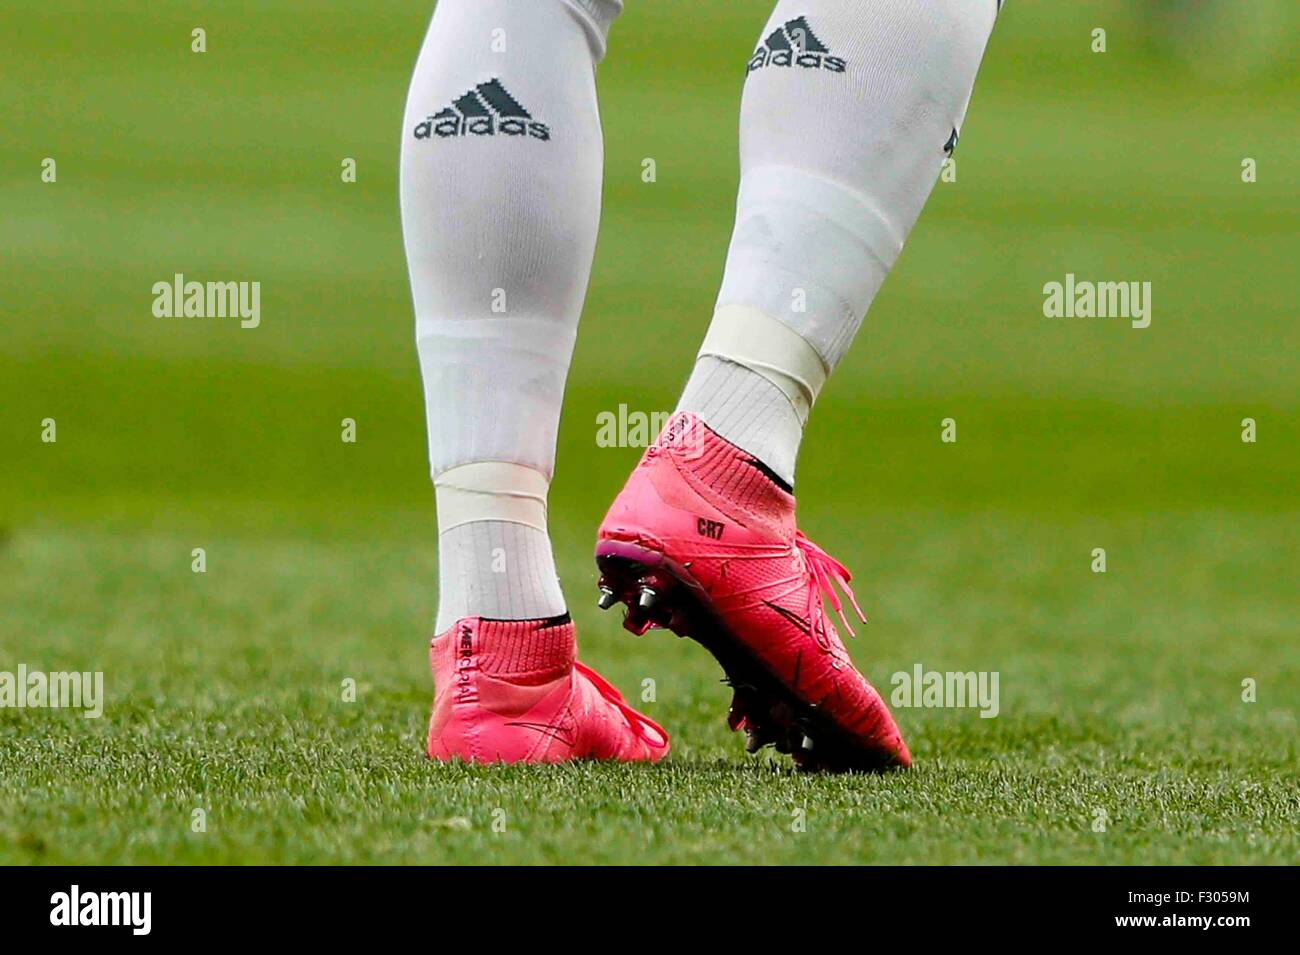 Madrid, Espagne. 26 Sep, 2015. Les chaussures personnalisées de Cristiano  Ronaldo dos Santos (7) Real Madrid au cours de la match de football de la  Liga entre le Real Madrid et Malaga